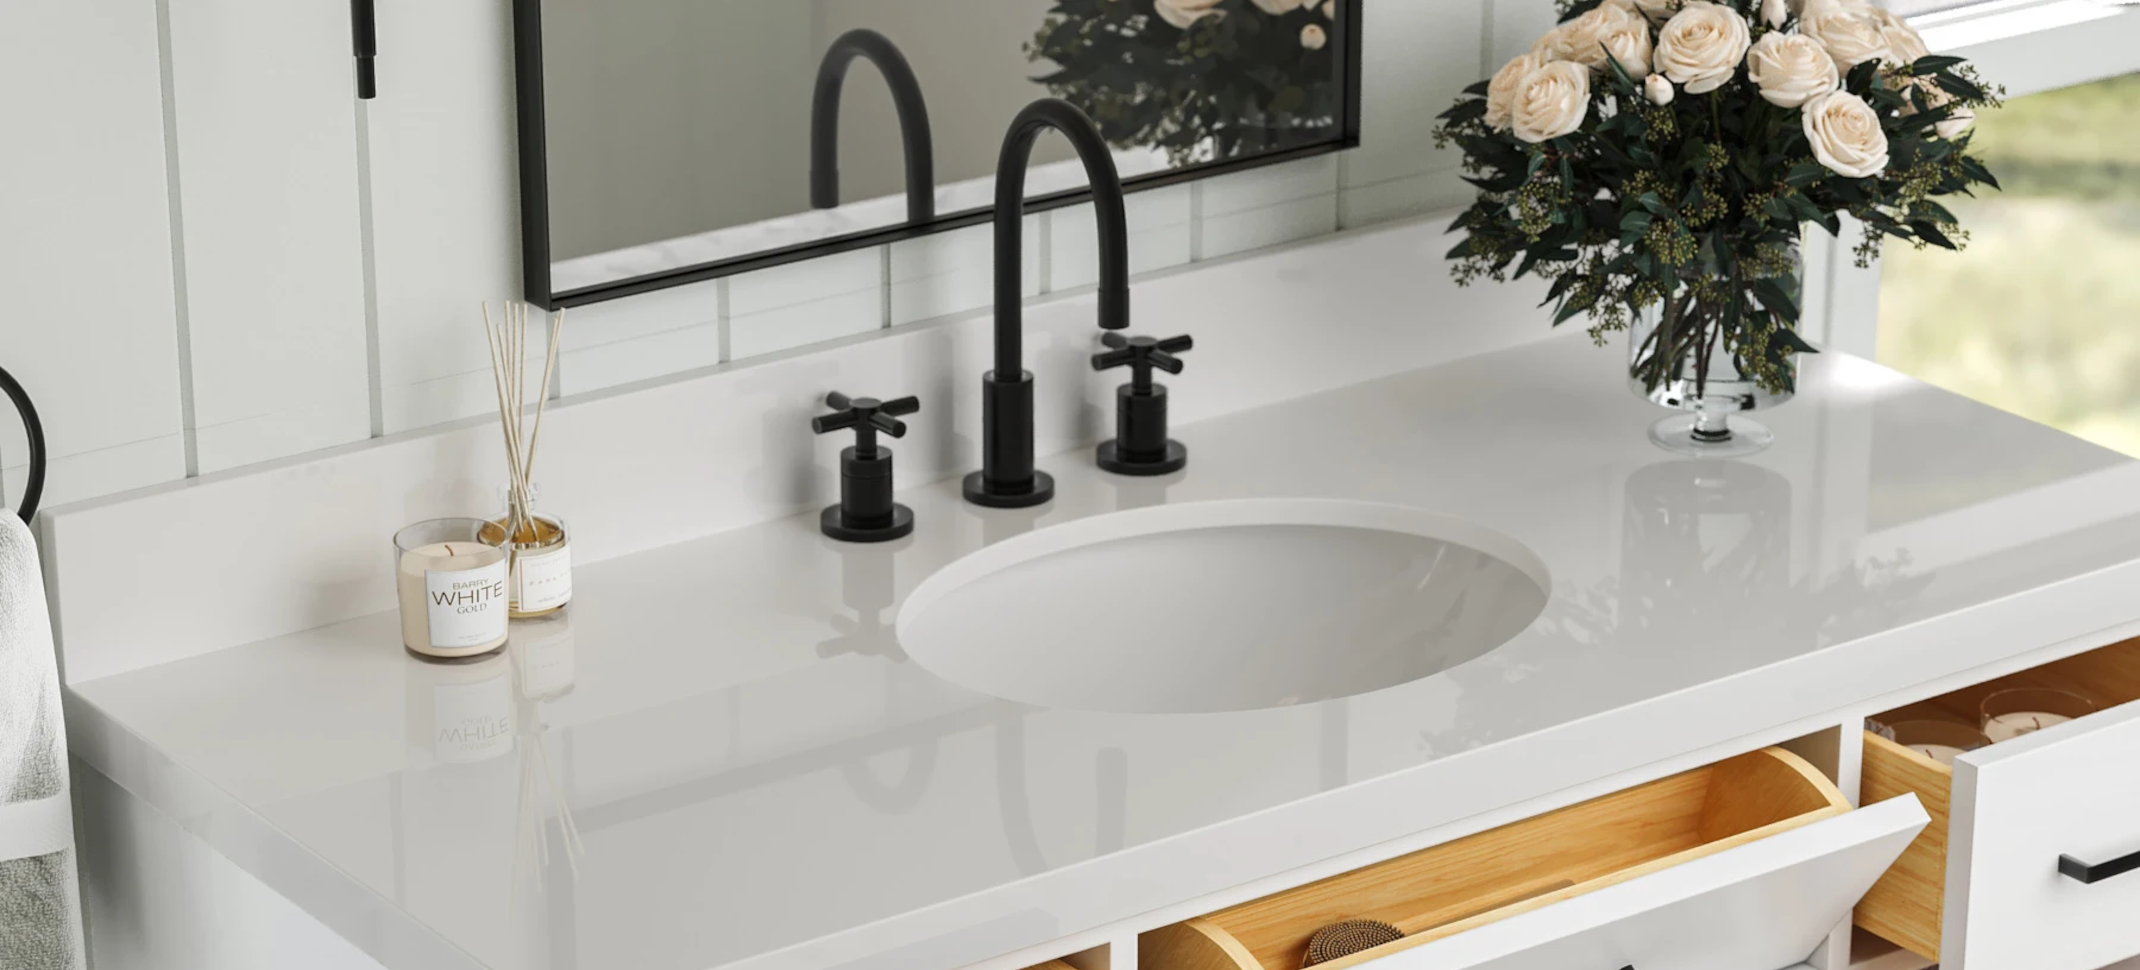 Plumbing Deals - Bathroom Sinks